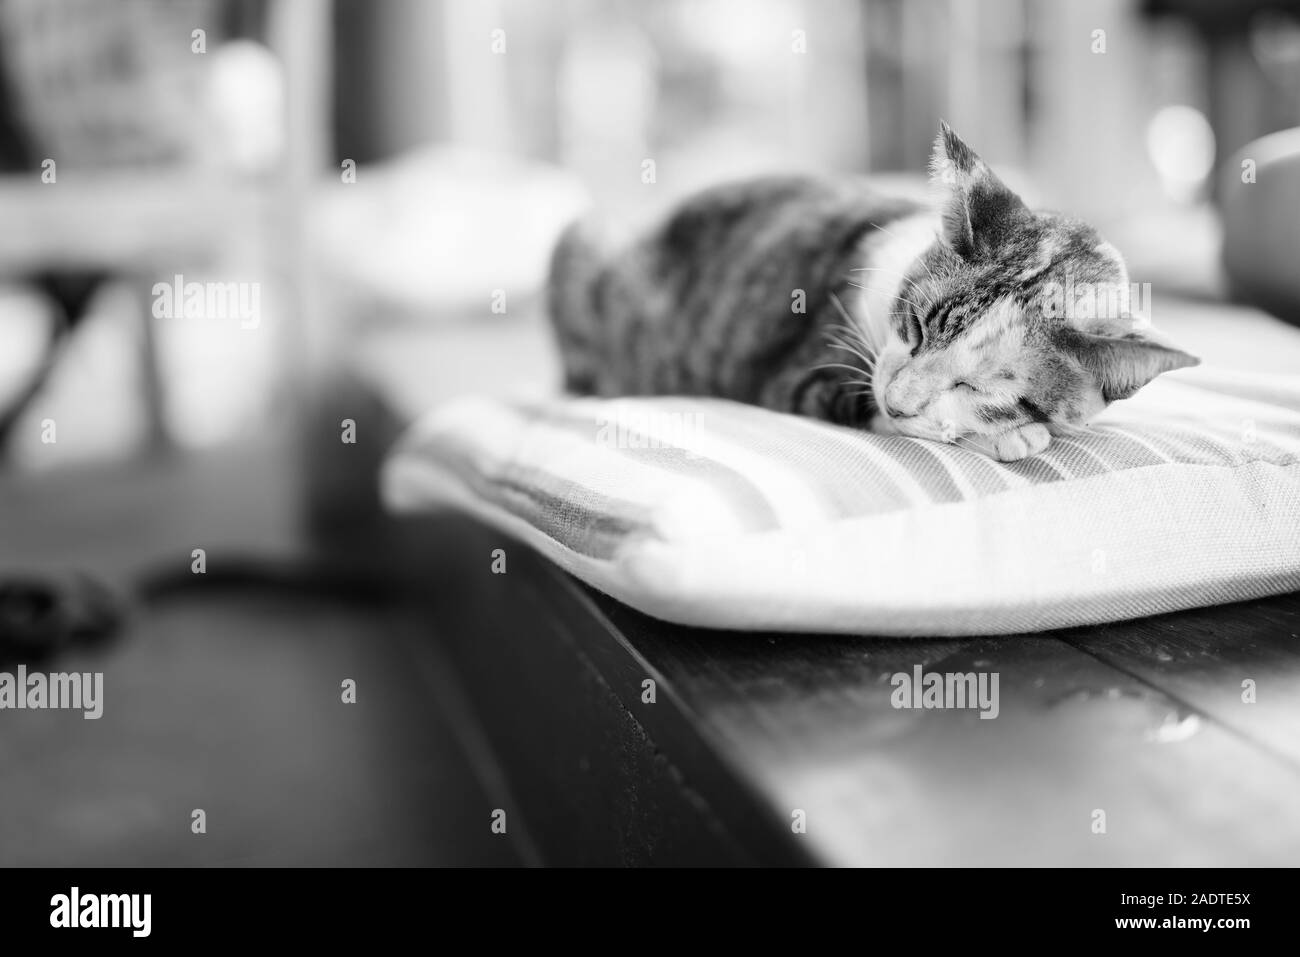 Carino Gatti calico dormire sul cuscino Foto Stock